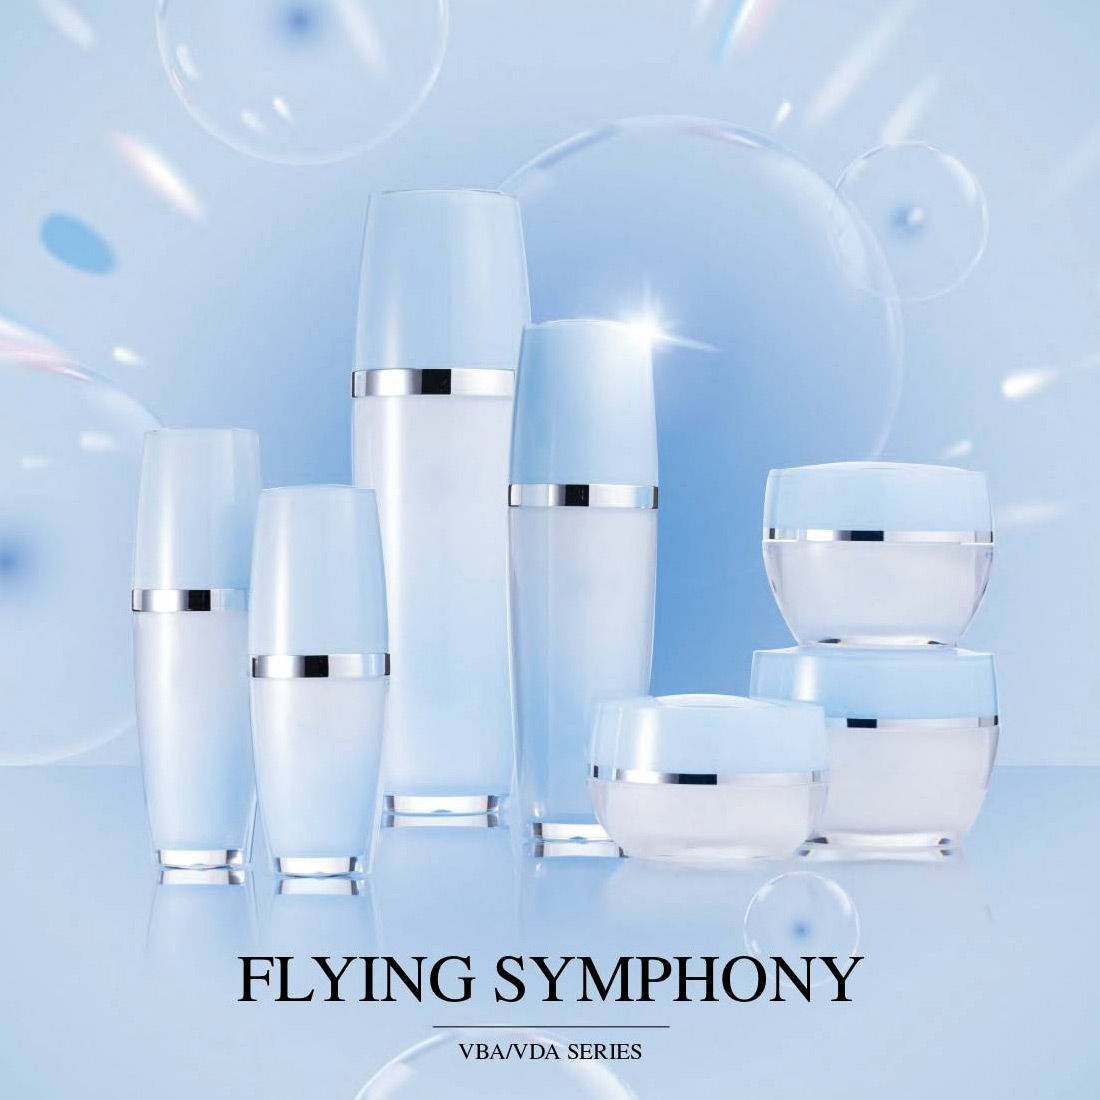 Flying Symphony (تغليف أكريليك فاخر لمستحضرات التجميل والعناية بالبشرة) سلسلة VBA/VDA